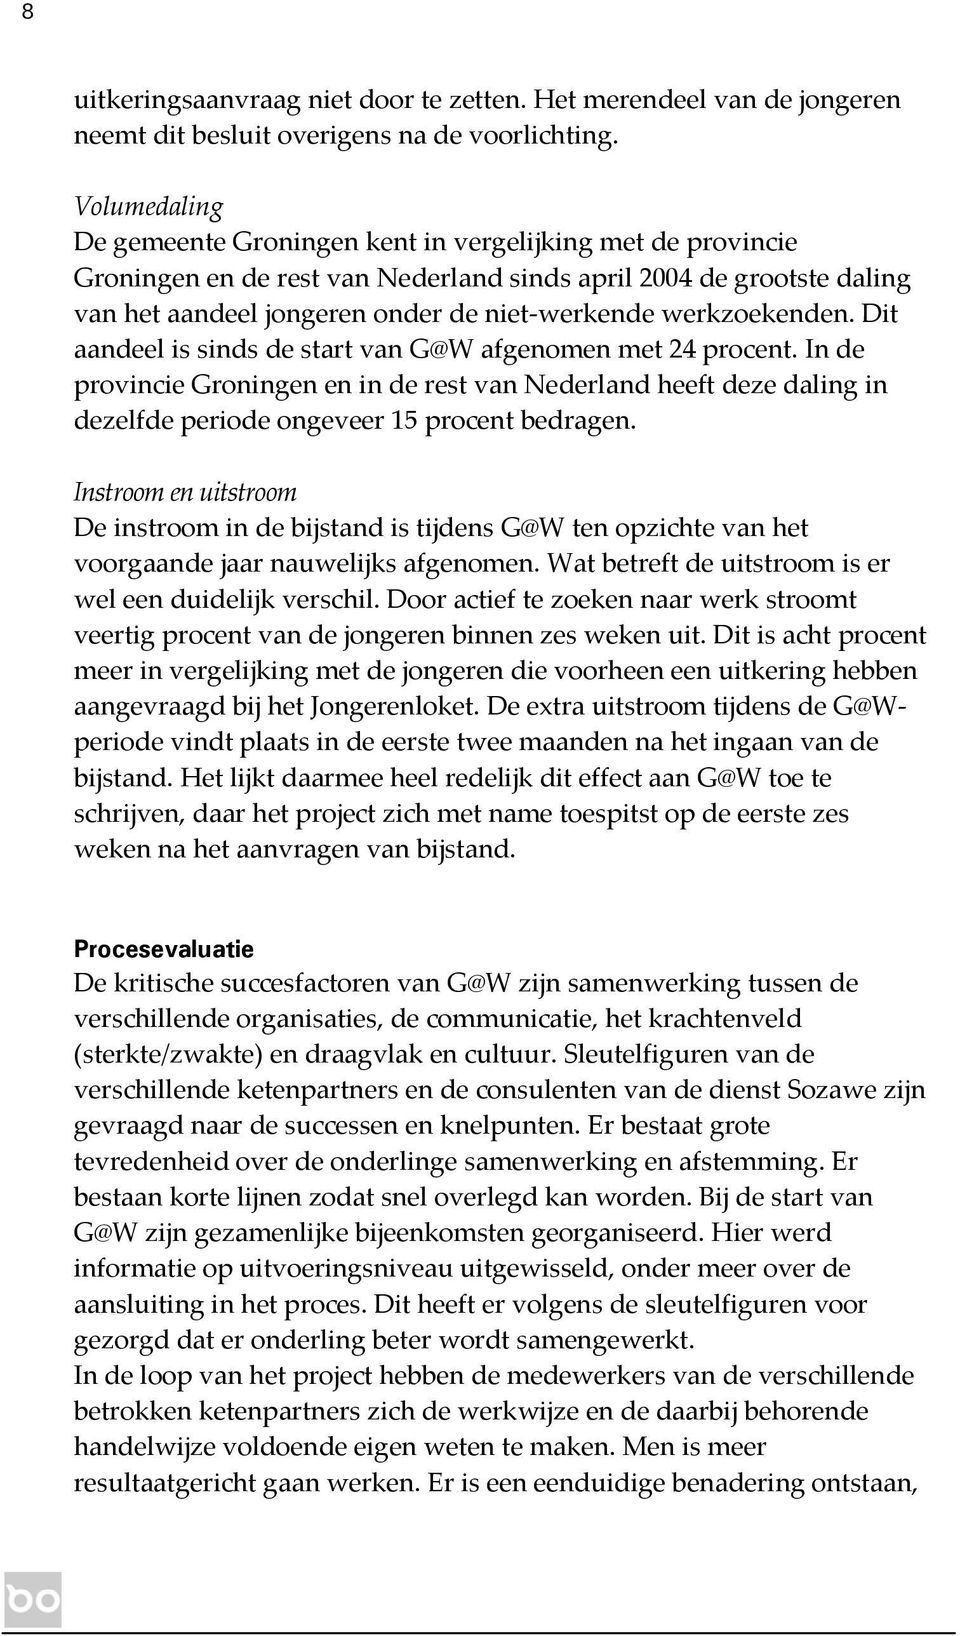 werkzoekenden. Dit aandeel is sinds de start van G@W afgenomen met 24 procent. In de provincie Groningen en in de rest van Nederland heeft deze daling in dezelfde periode ongeveer 15 procent bedragen.